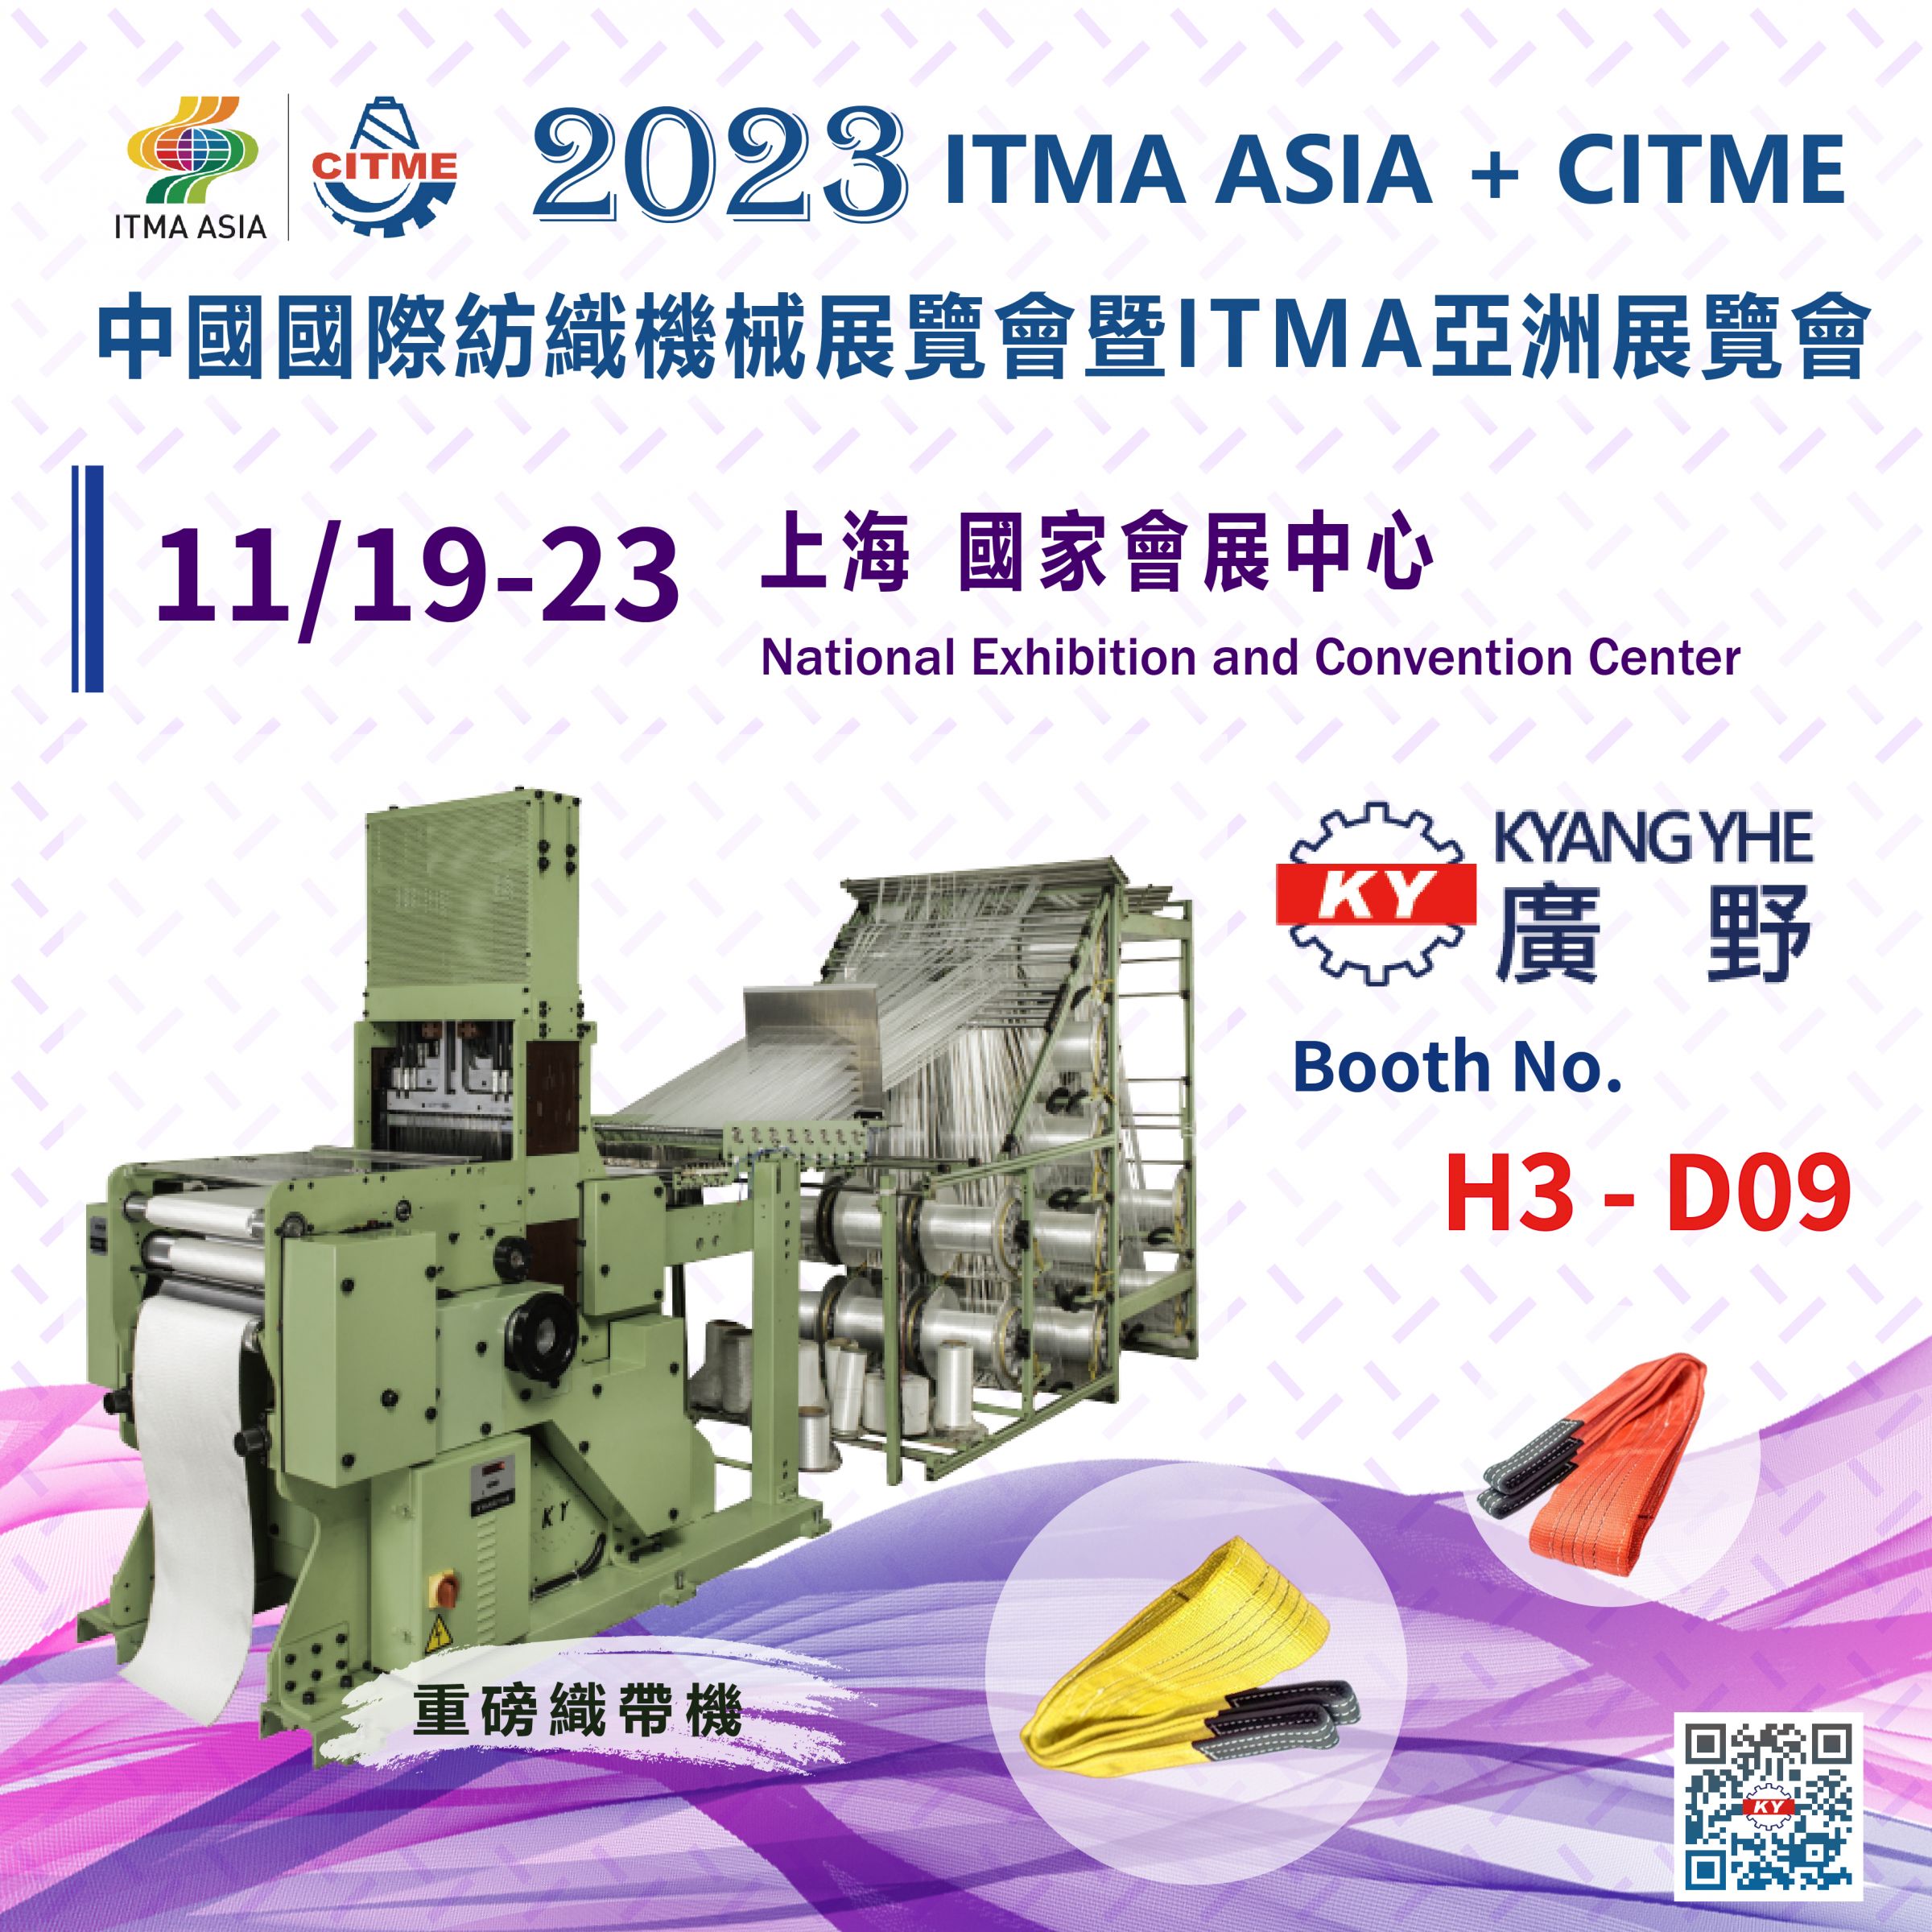 2023 ITMA ASIA + CITME à Shanghai, Chine